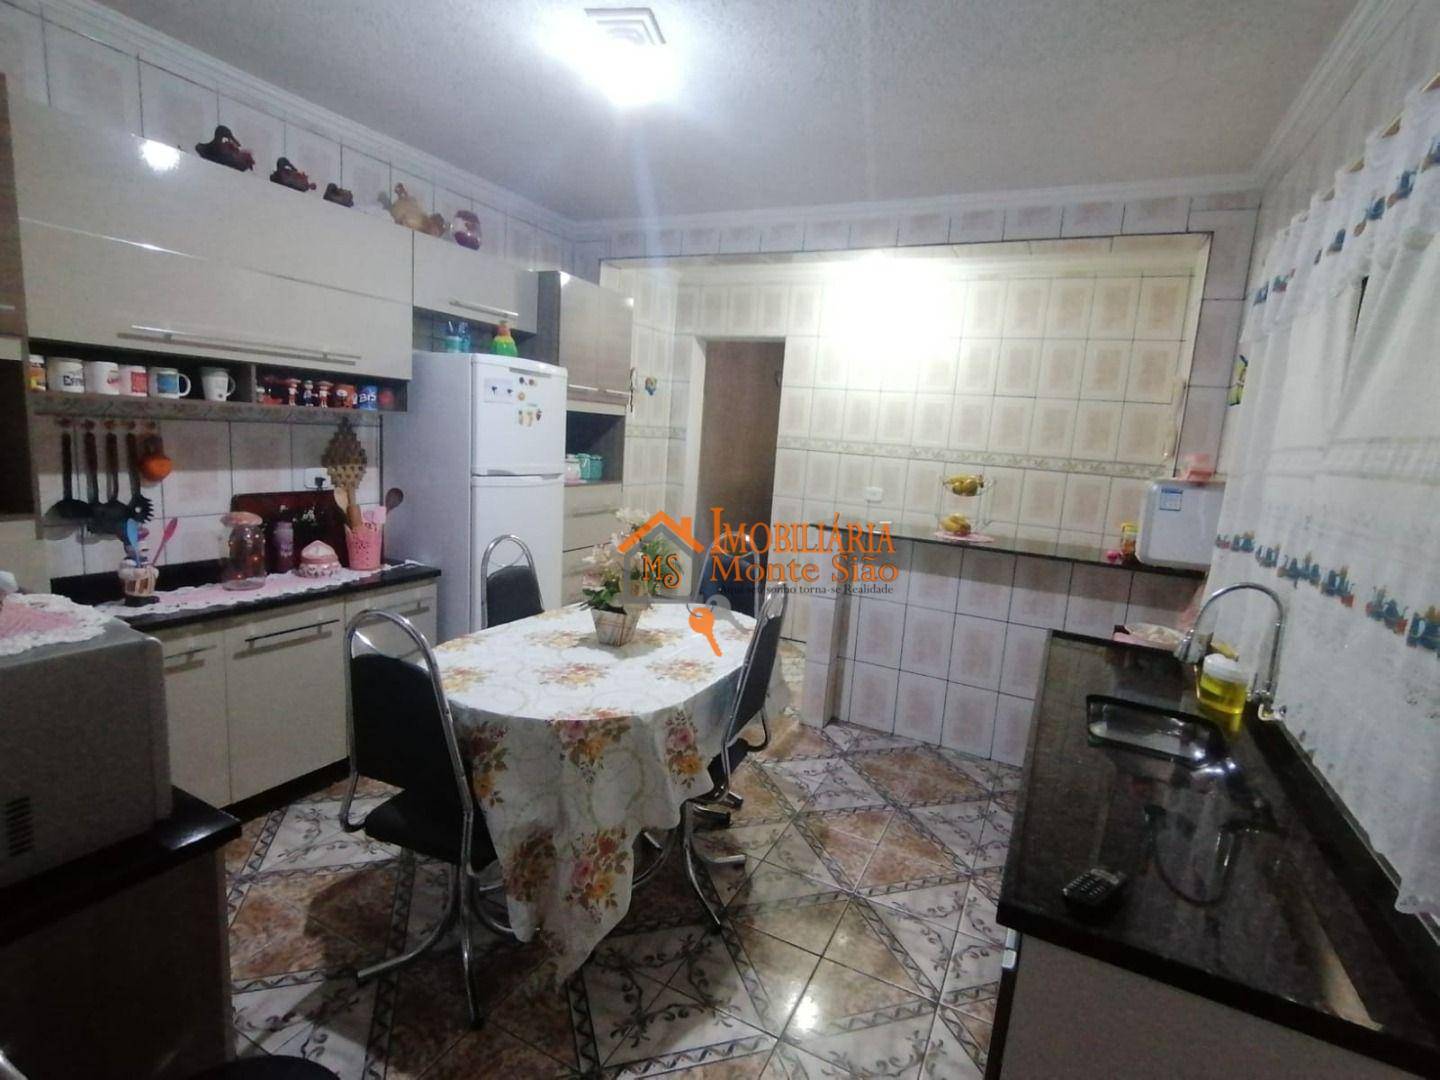 Sobrado com 2 dormitórios à venda, 110 m² por R$ 403.000,00 - Parque Jurema - Guarulhos/SP